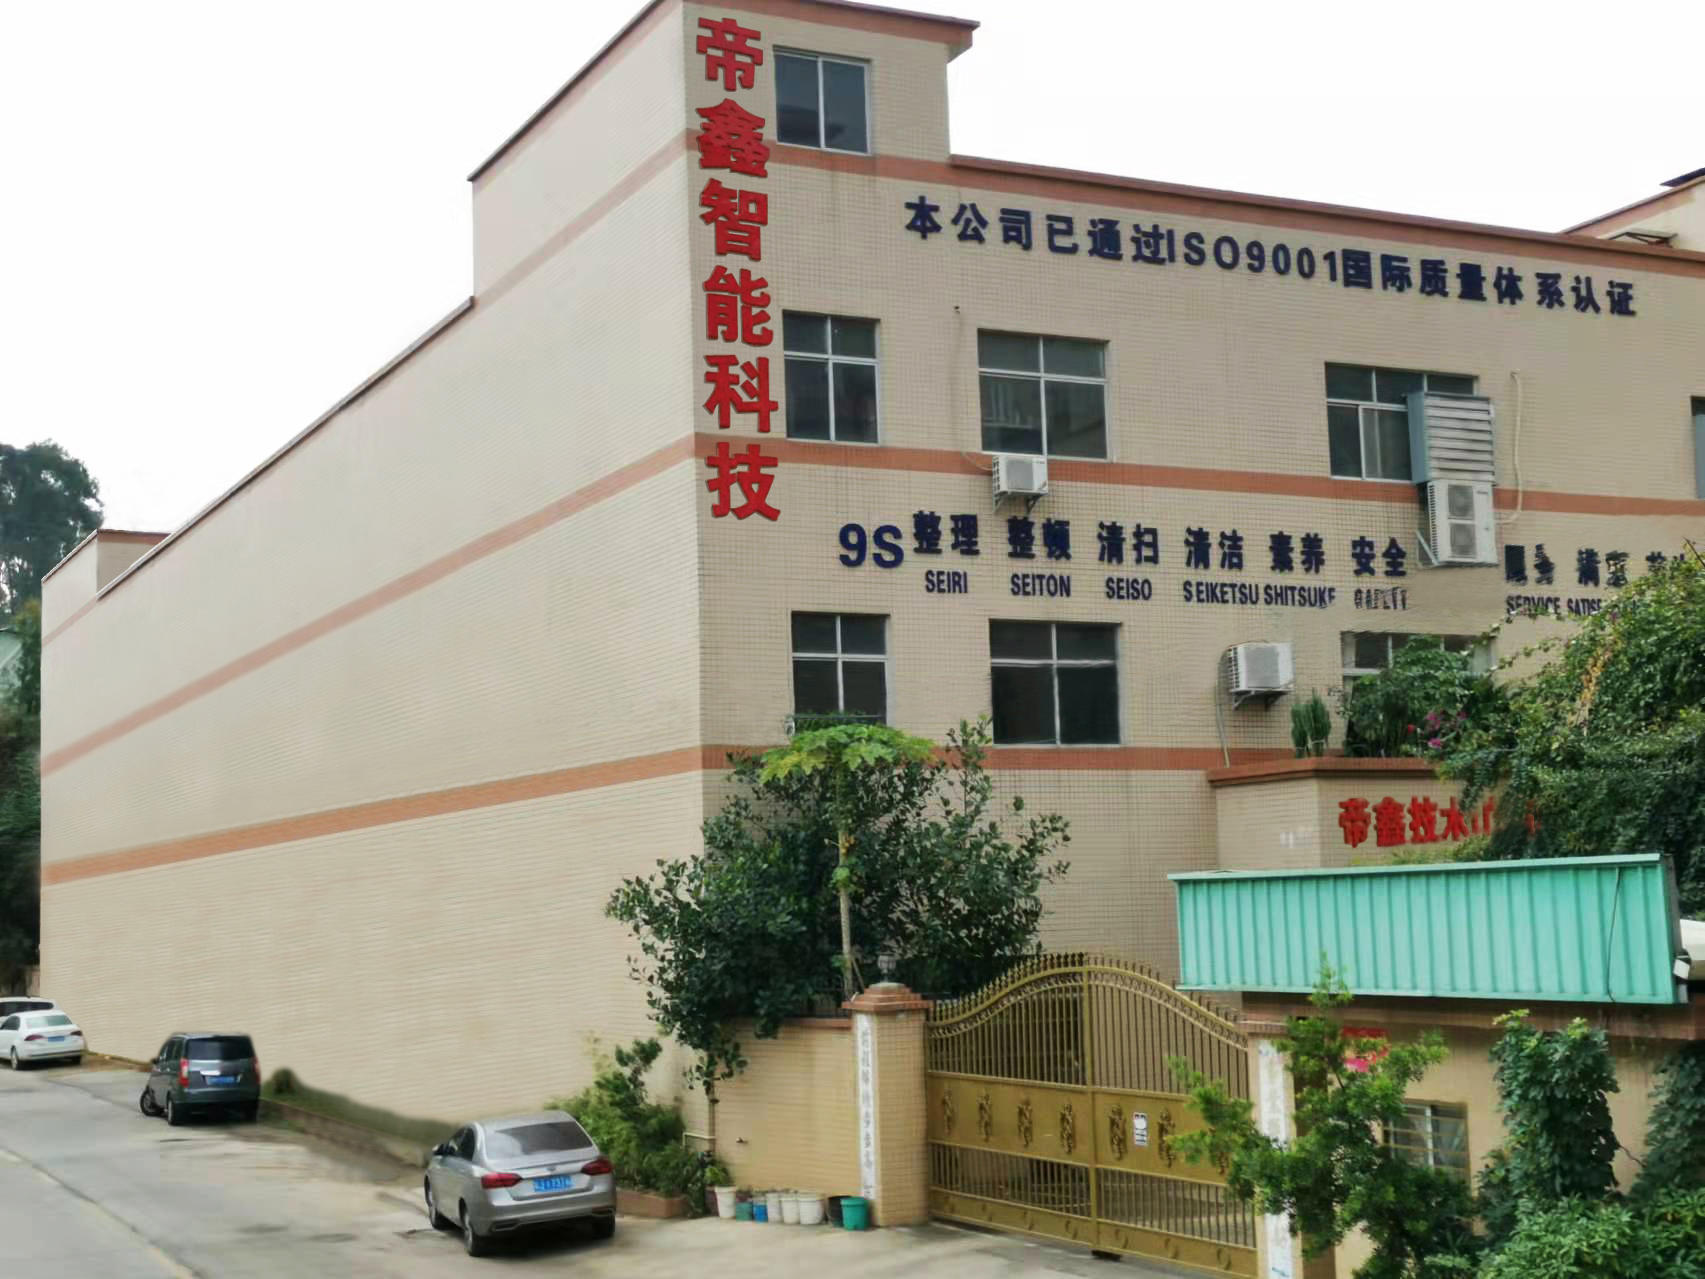     Dixin Technology (Guangdong) Co., Ltd